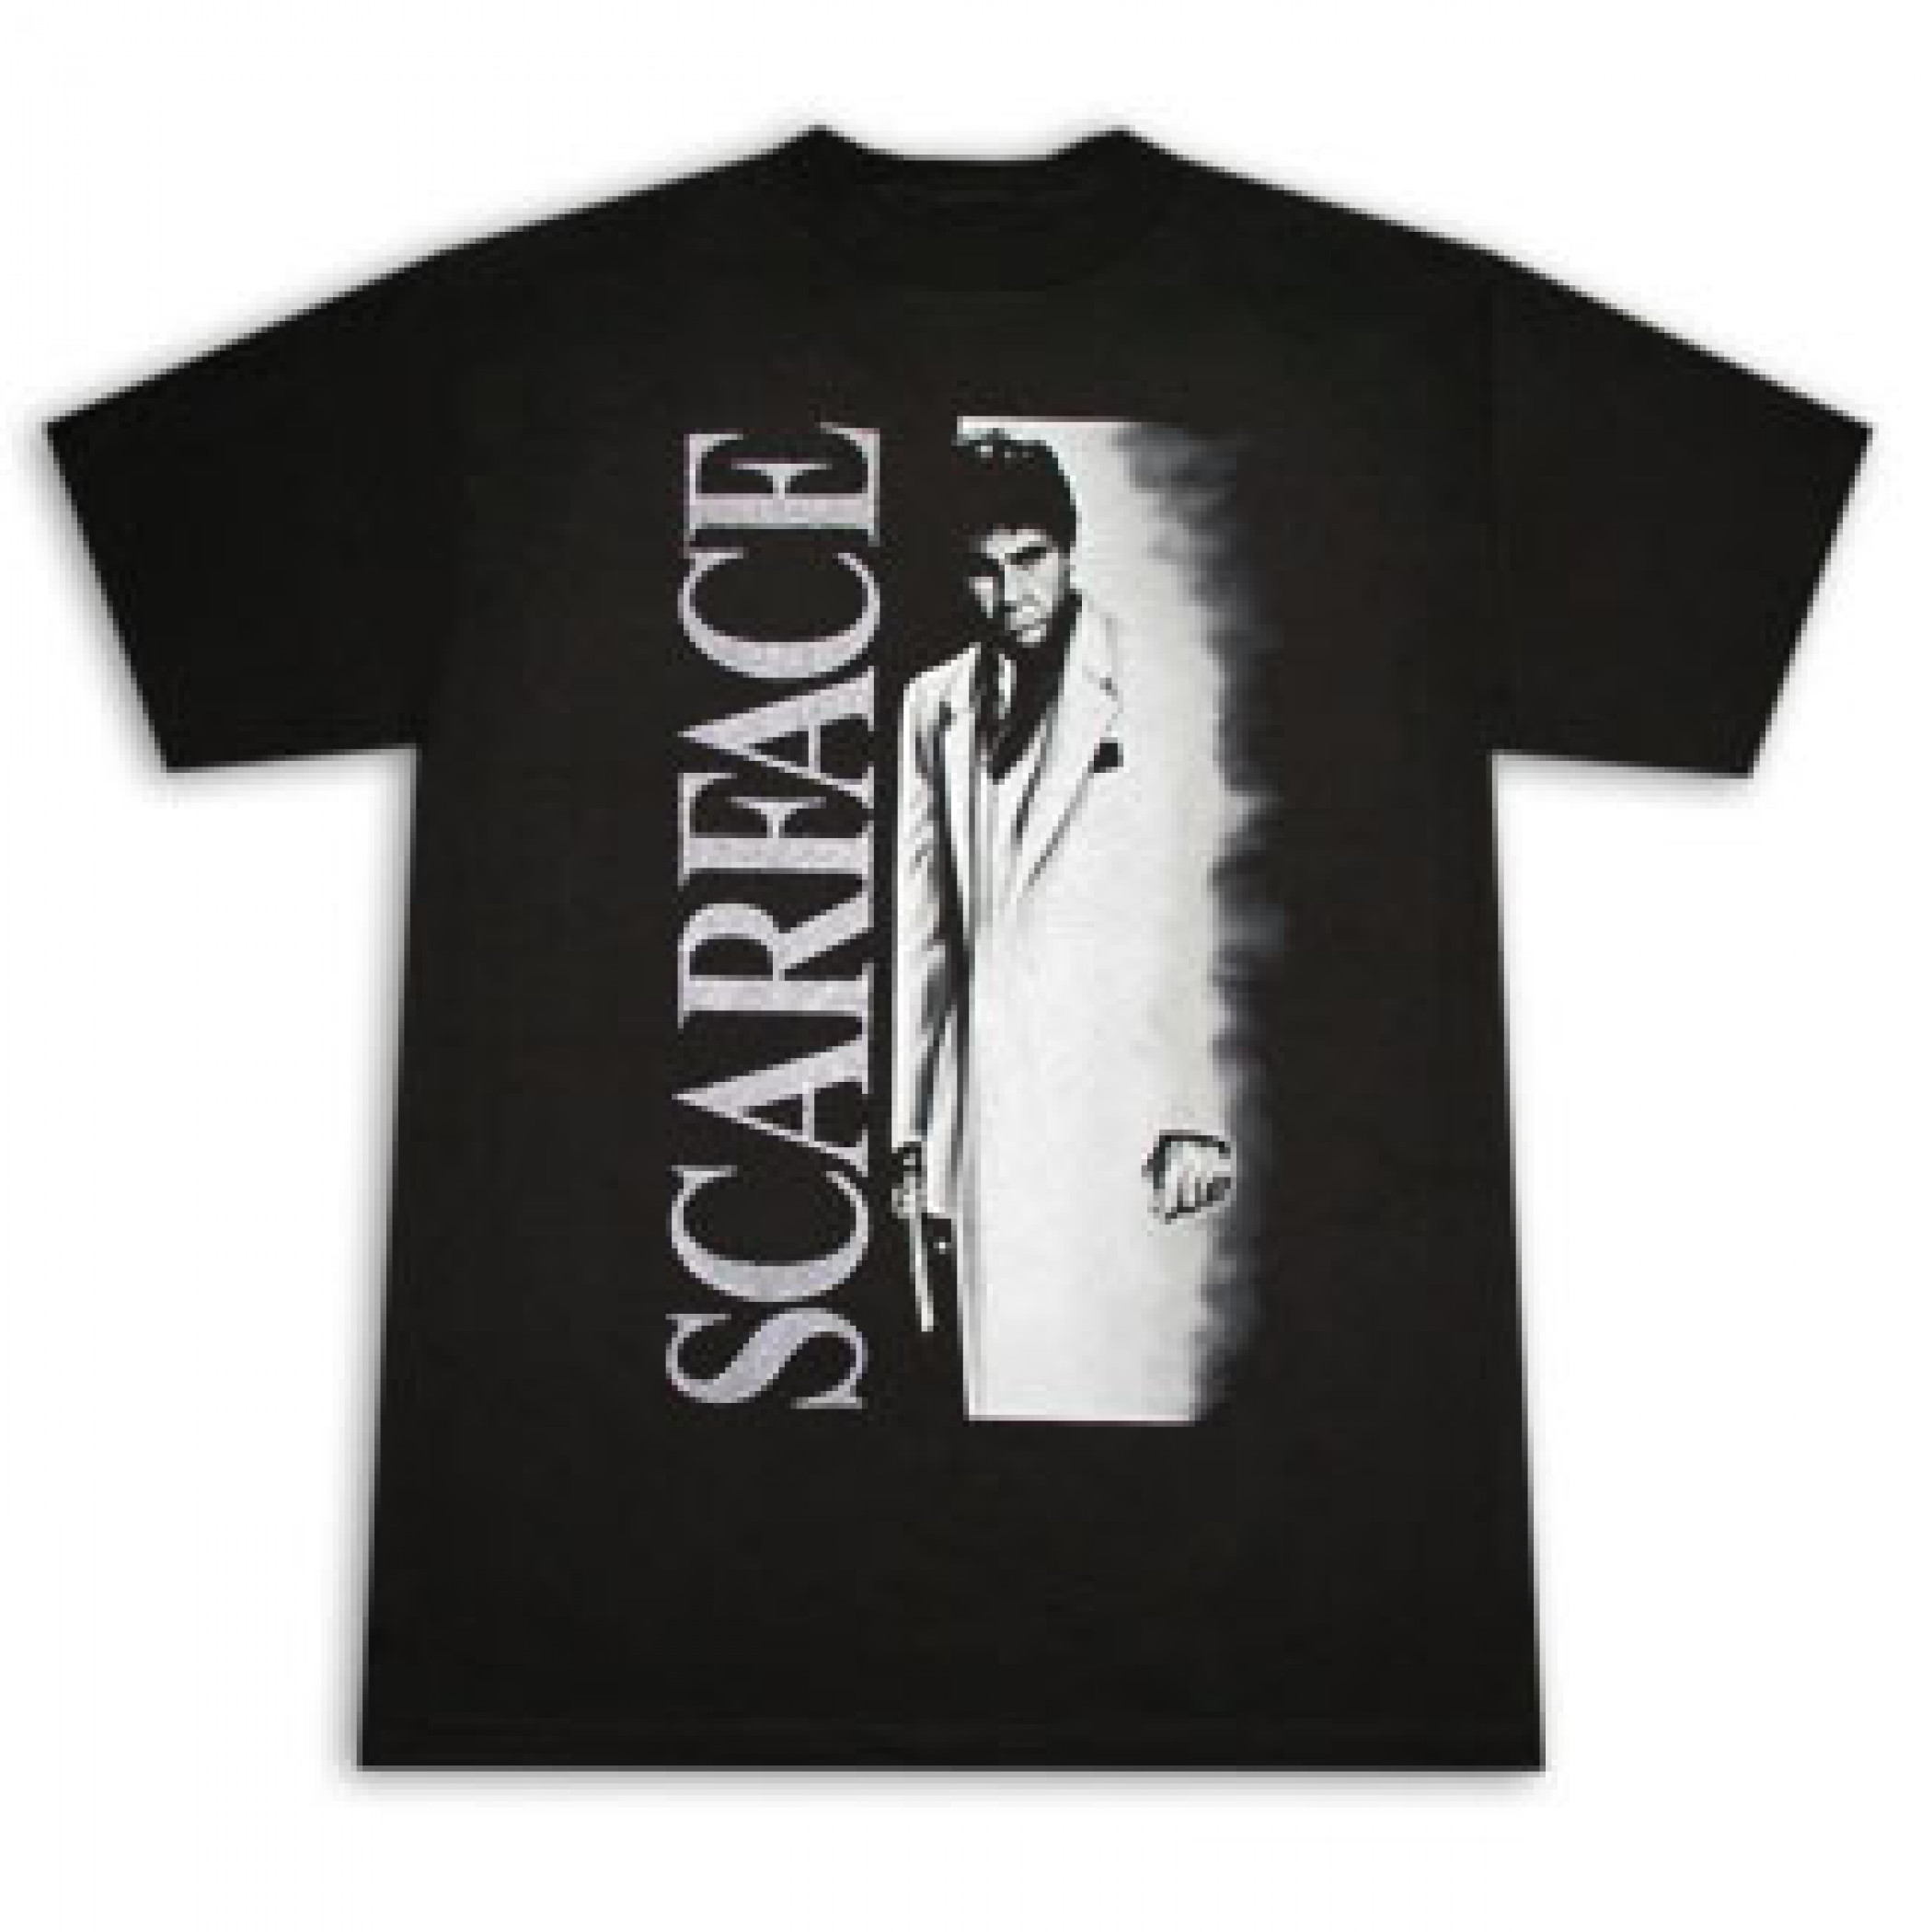 Scarface Airbrush Metallic Poster Black Graphic T-Shirt